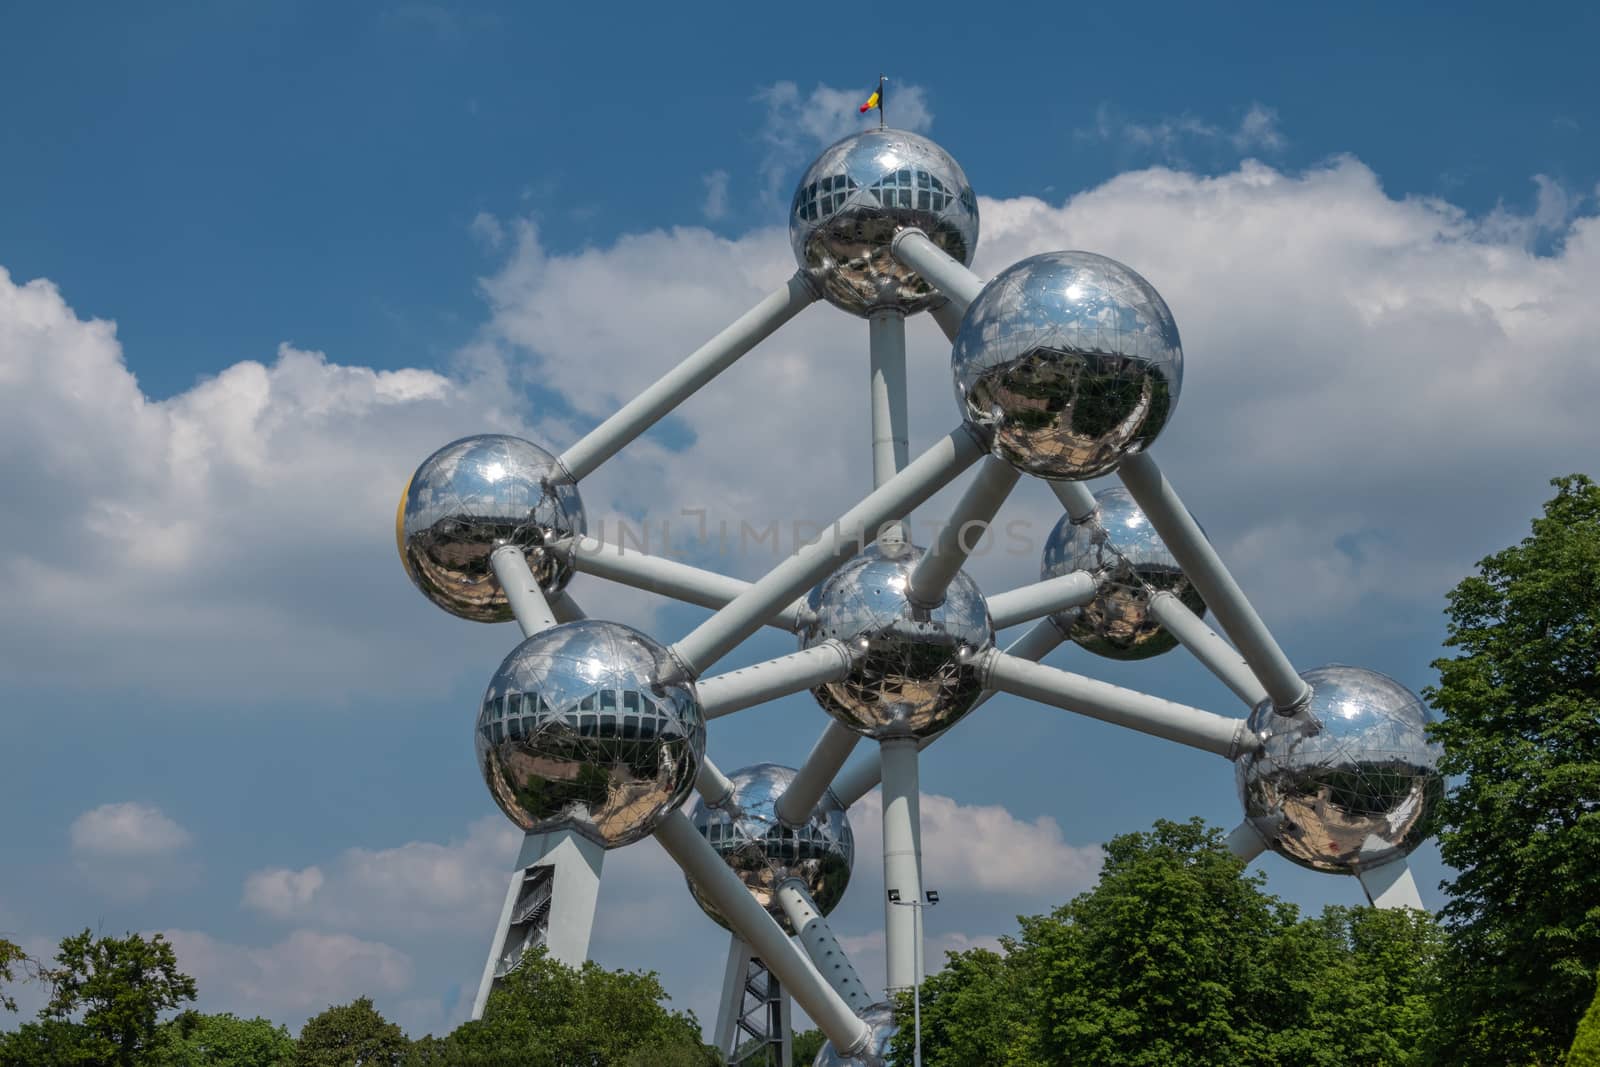 Atomium monument in Brussels, Belgium. by Claudine